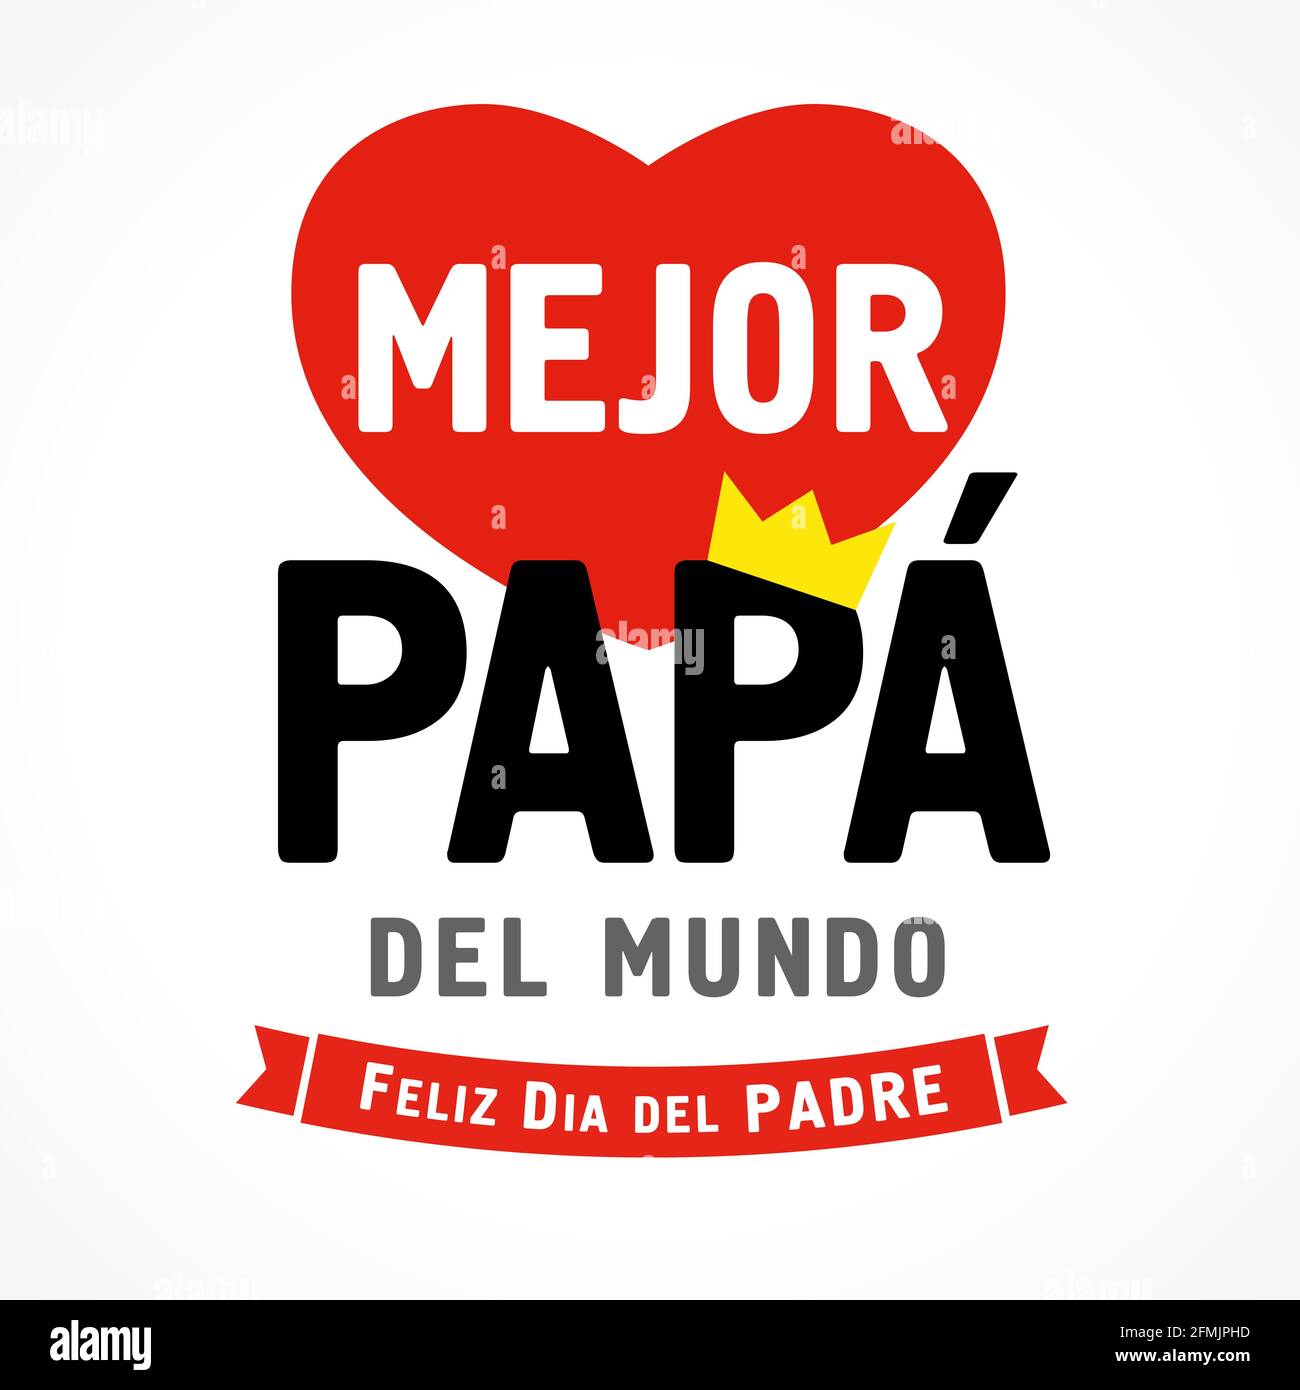 Letras en español Mejor Papa del mundo & Feliz dia del Padre, traducir -  Mejor papá en el mundo, Feliz día de los padres. Tarjeta del día del padre o  banner de